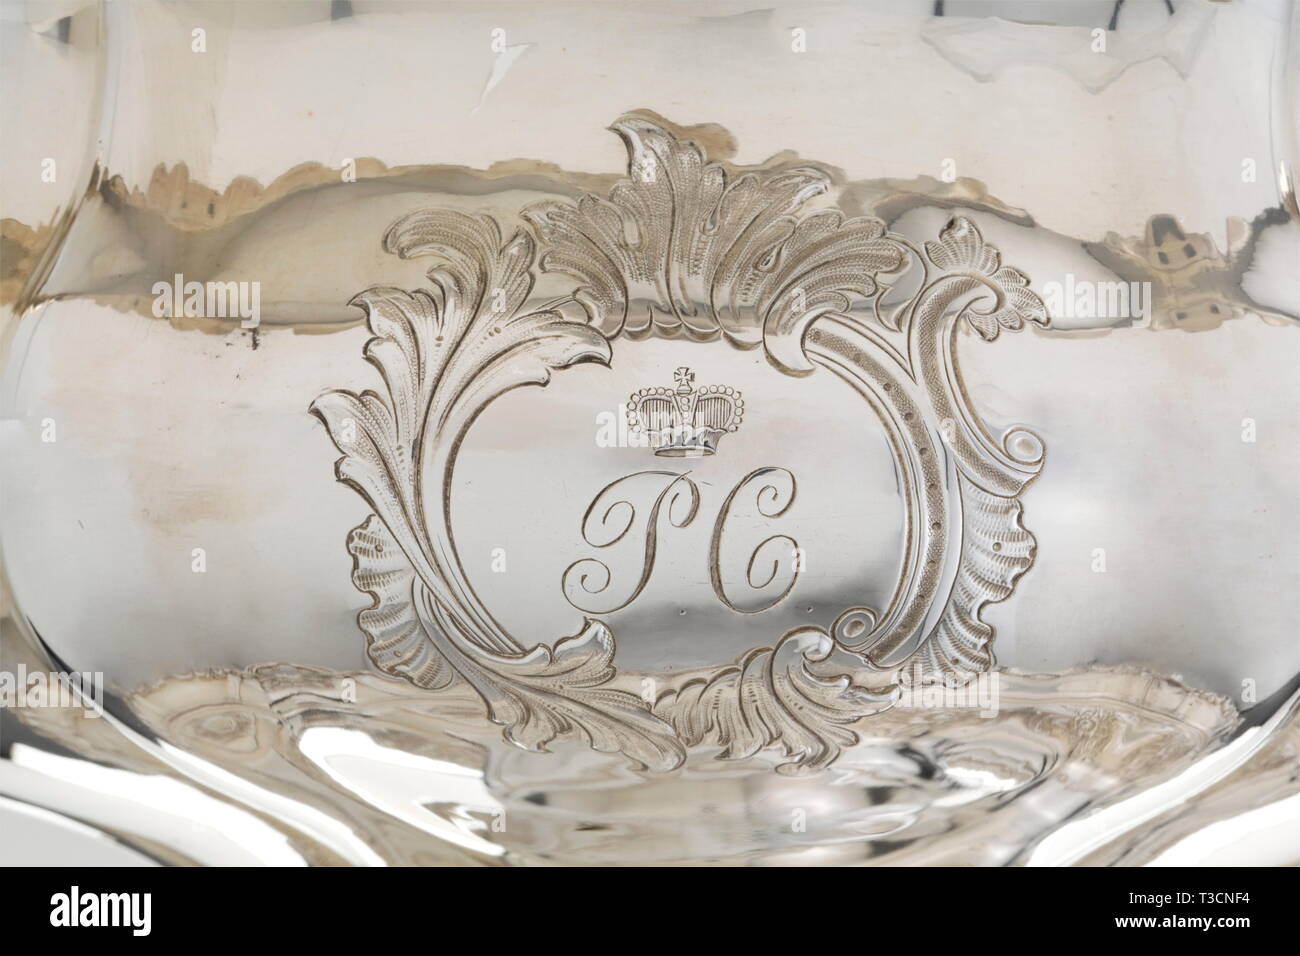 Un centre de table princière, Humbert & Sohn, Berlin, vers 1850 Argent, faite en deux morceaux. Richement décorées avec soulevées, gaufré et ciselées, feuille, fleur, volute et ornementation rocaille. L'avers est gravée avec un cartouche portant le monogramme 'PC' au-dessous d'une couronne du prince. La base est conçue en suite et a la marque du maître, 'Humbert & Sohn' et l'ours de Berlin, le long de avec la marque d'inspection 'C'. Hauteur 32,5 cm. Poids env. 2500 g. Humbert & Sohn, les joailliers à cour le roi de Prusse. Pièce maîtresse dans son excellent merveilleux, Additional-Rights Clearance-Info-Not-Available- Banque D'Images